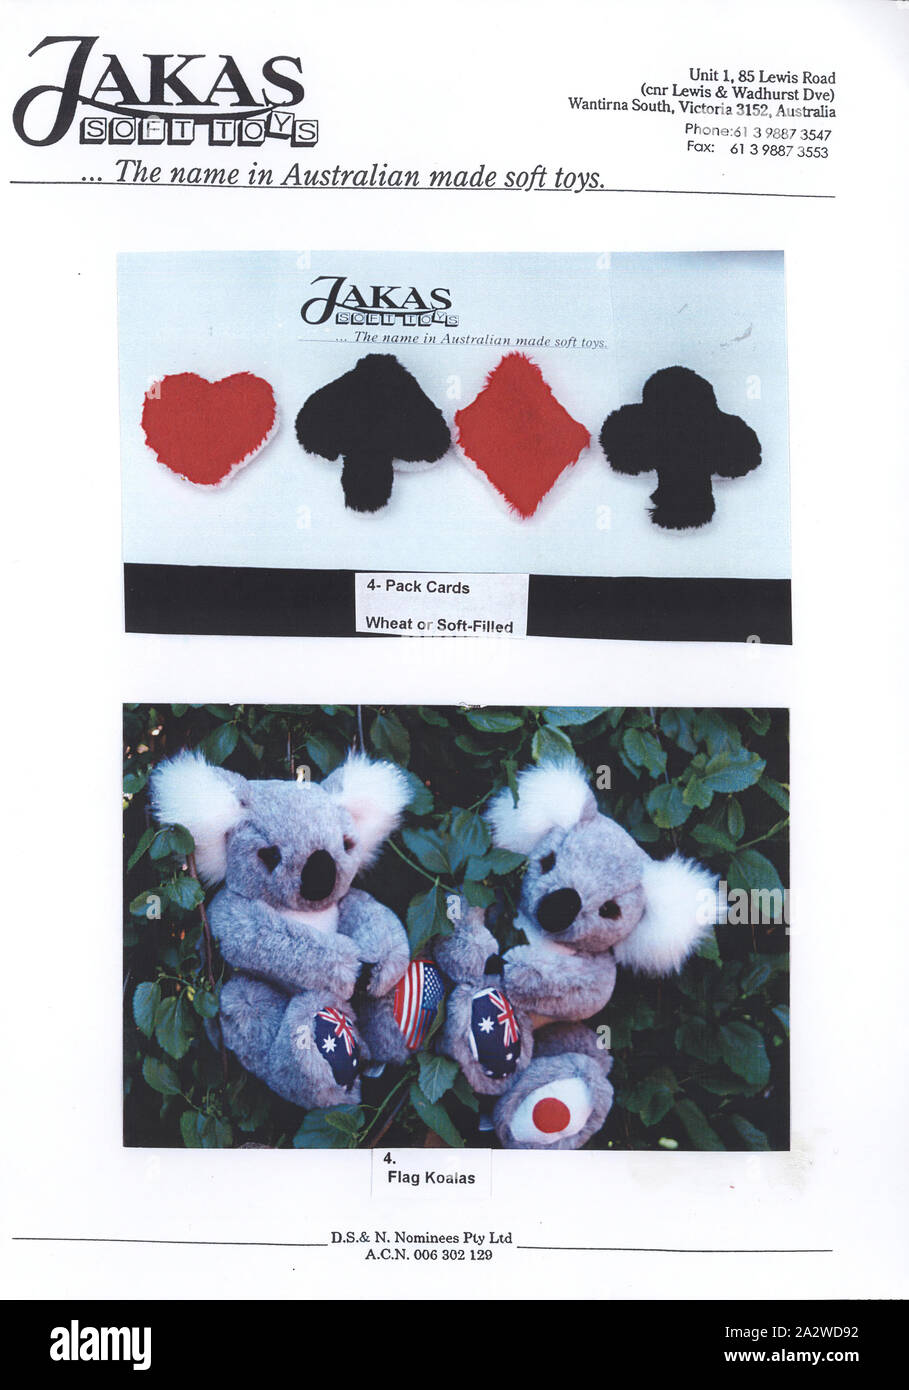 Dépliant publicitaire - Jakas jouets mous, Playing Card Suits & Drapeau Koalas, Melbourne, 1997, une seule page document publicitaire montrant la carte de jeu, Cœurs, Piques, les diamants et les clubs, conçus comme des sacs de blé et des Peluches et Doudous koala deux, connu sous le drapeau 'Koalas'. Les jouets mous Jakas était une société basée à Melbourne qui a conçu et fabriqué des peluches de haute qualité authentique à partir de 1956. Leur gamme inclus nounours, golliwogs et animaux indigènes australiens. Jakas Soft Banque D'Images